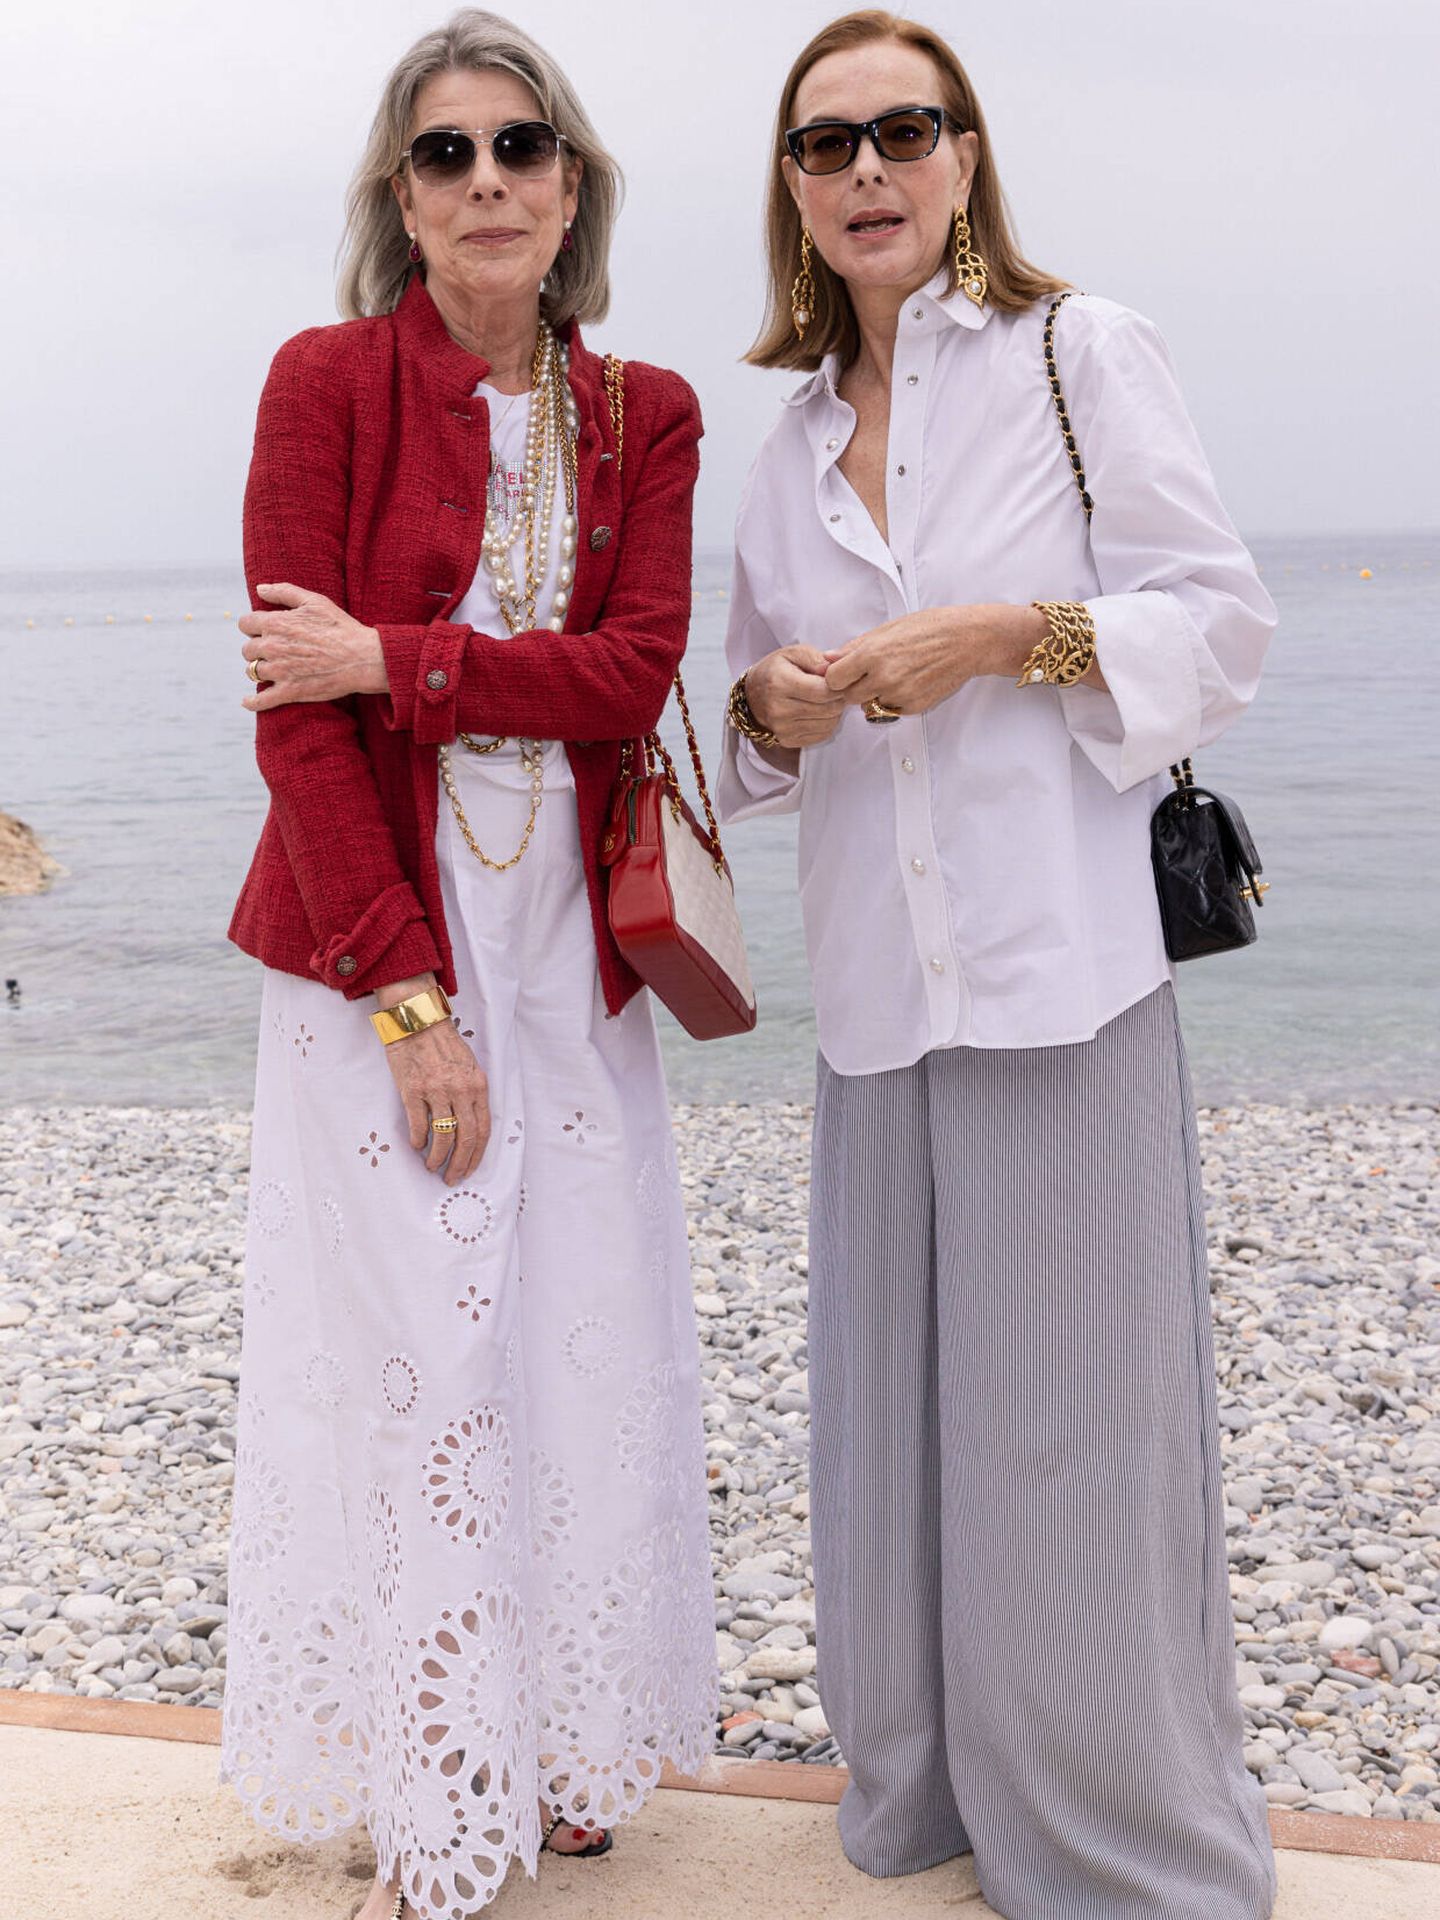 Carolina y Carole Bouquet. (Gtres)